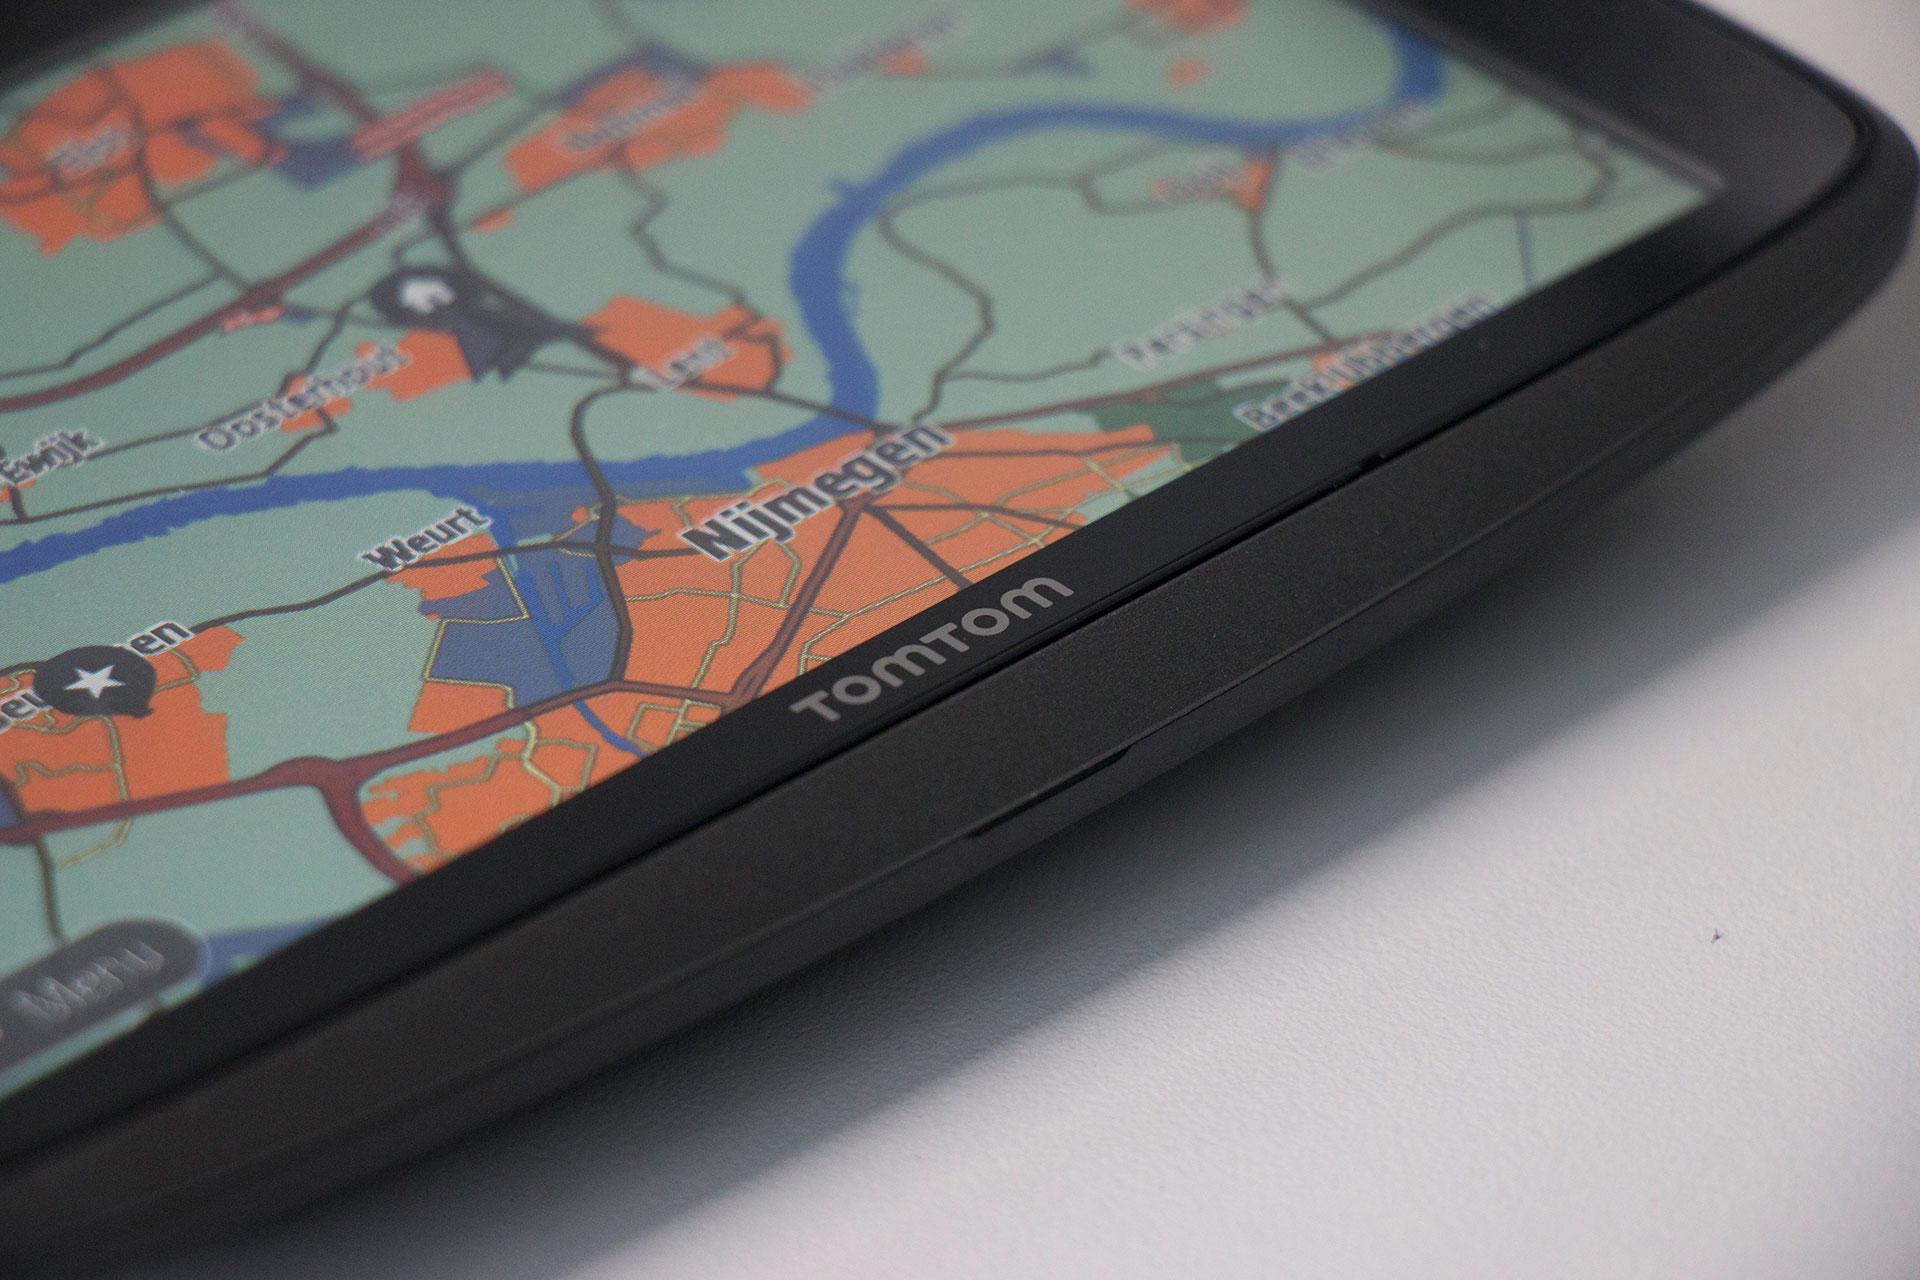 Review: TomTom Go 6200 Navigatiesysteem met 3G